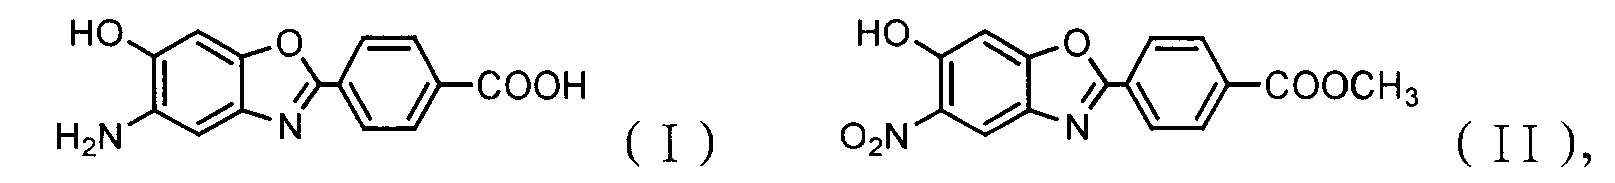 Method for synthesizing 5-amide-6-hydroxy-2-(4-carboxylphenyl)benzoxazole